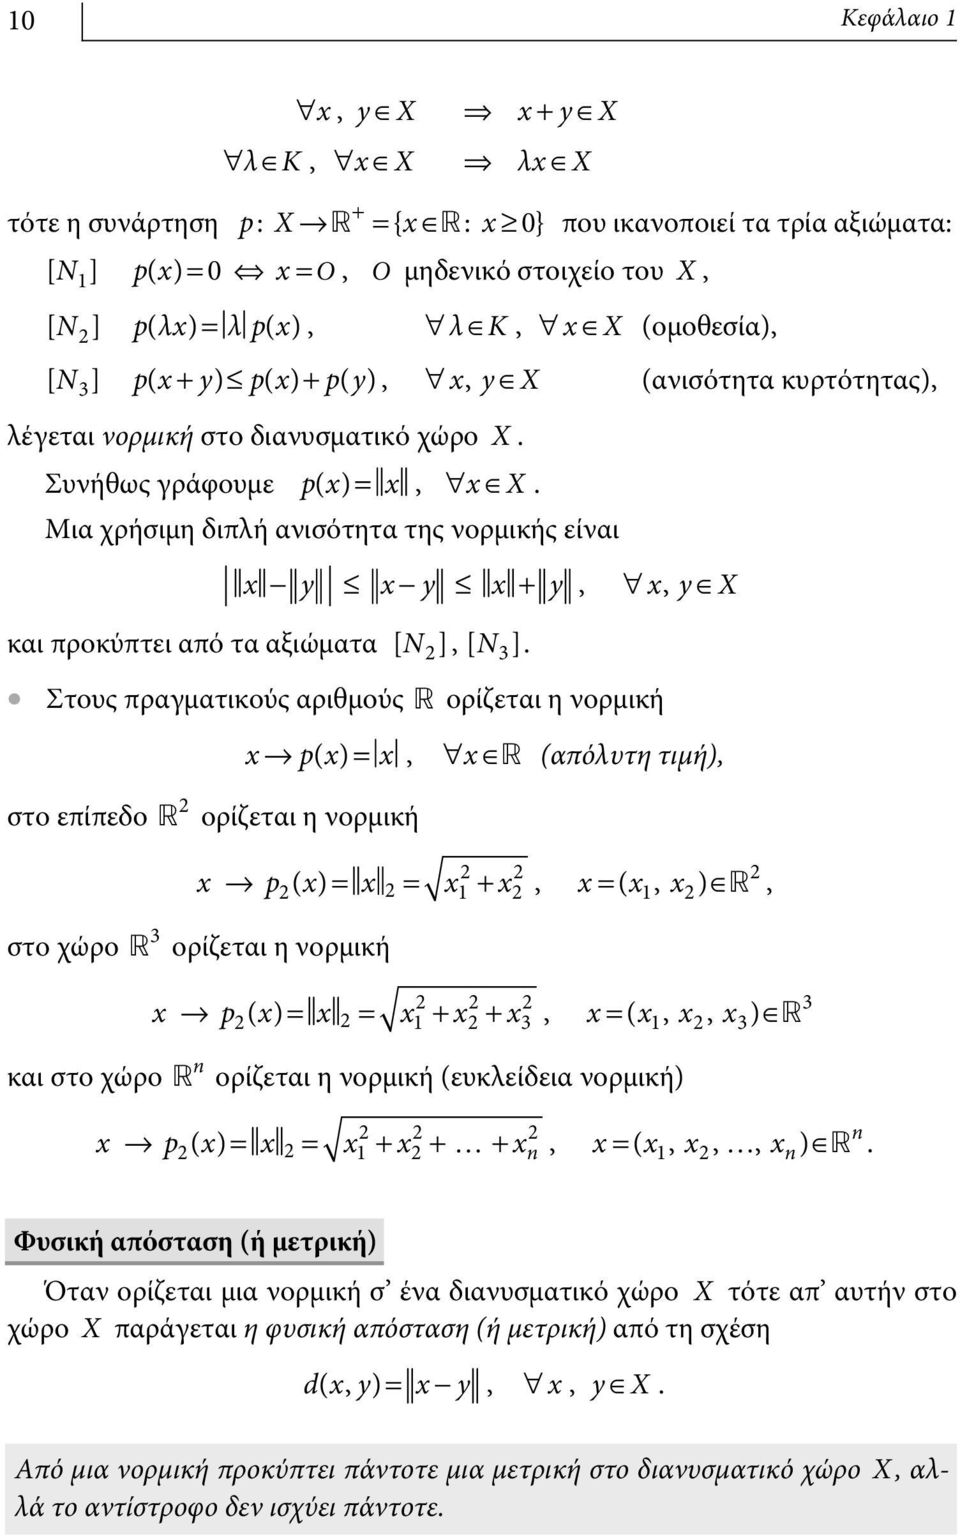 Μια χρήσιμη διπλή ανισότητα της νορμικής είναι - y - y + y, ", yœ X και προκύπτει από τα αξιώματα [ N], [ N 3].